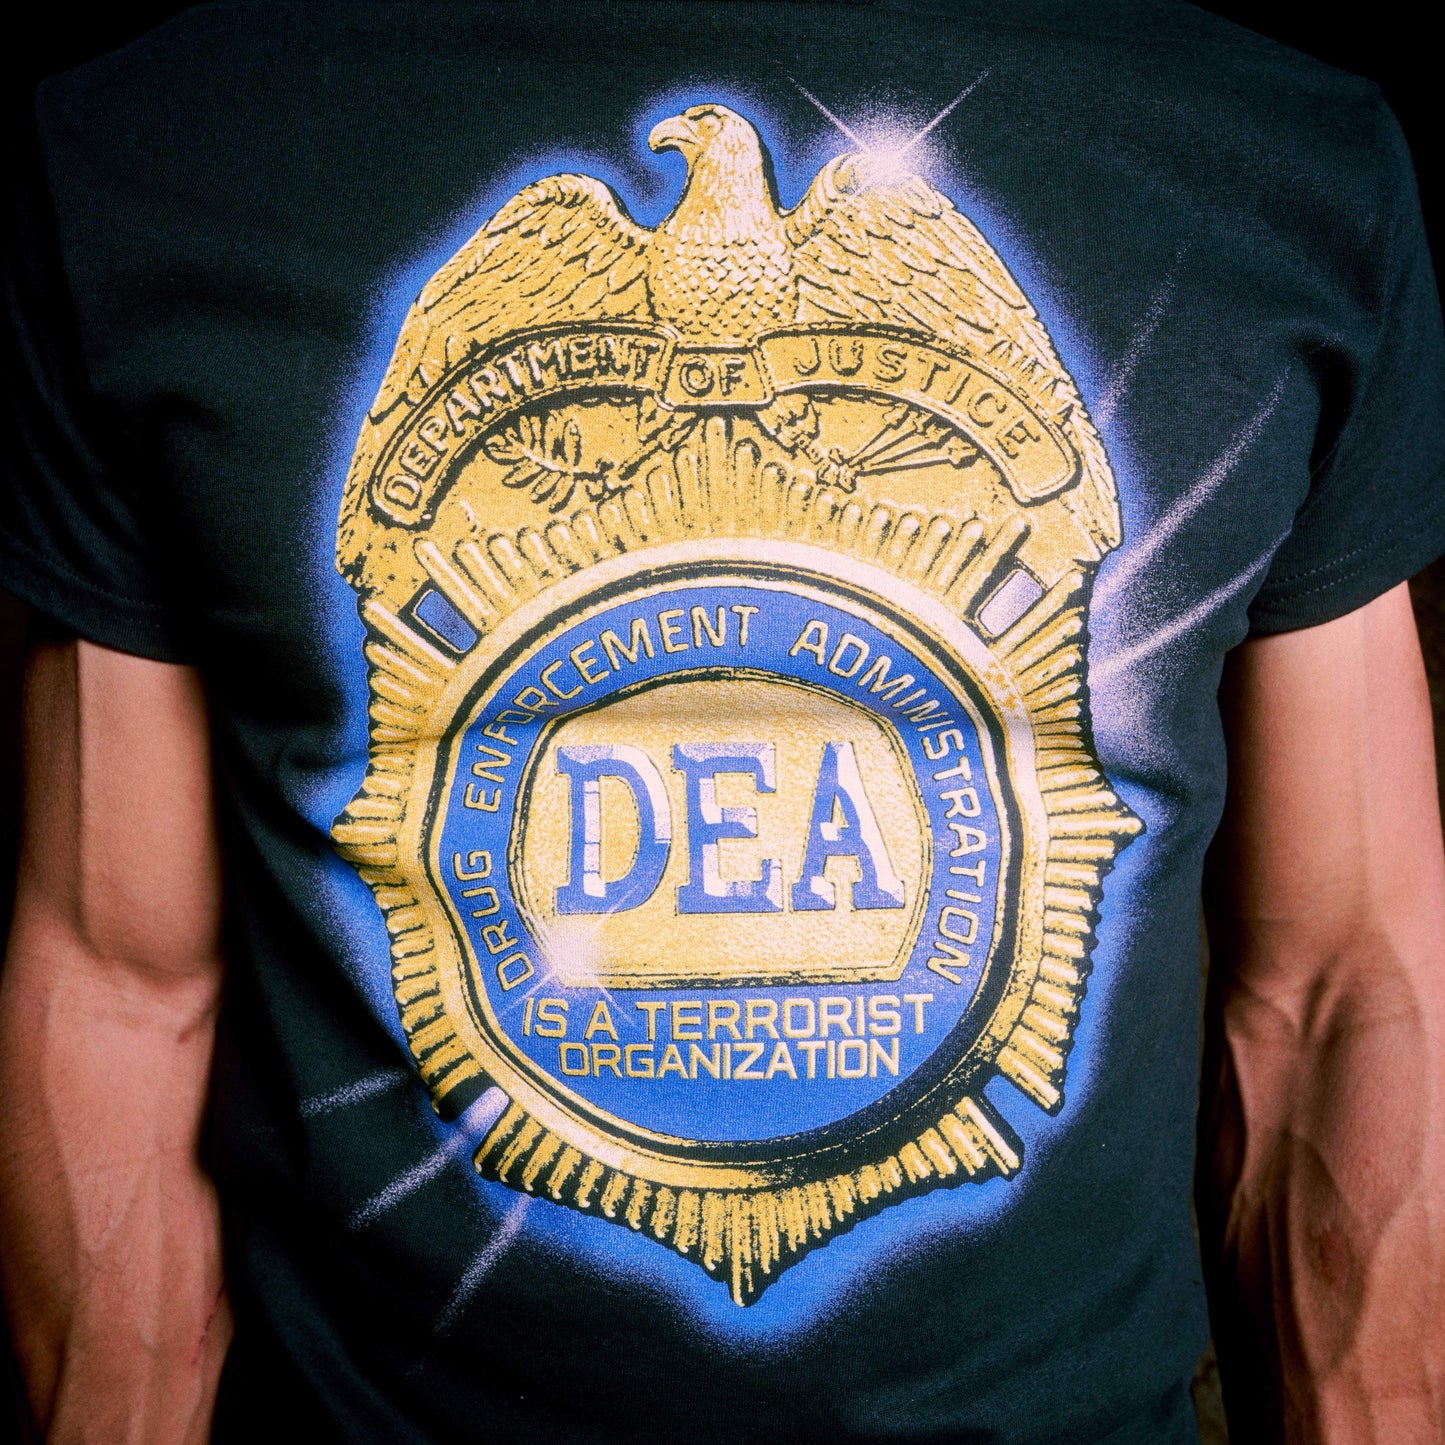 "DEA" - Black Tee